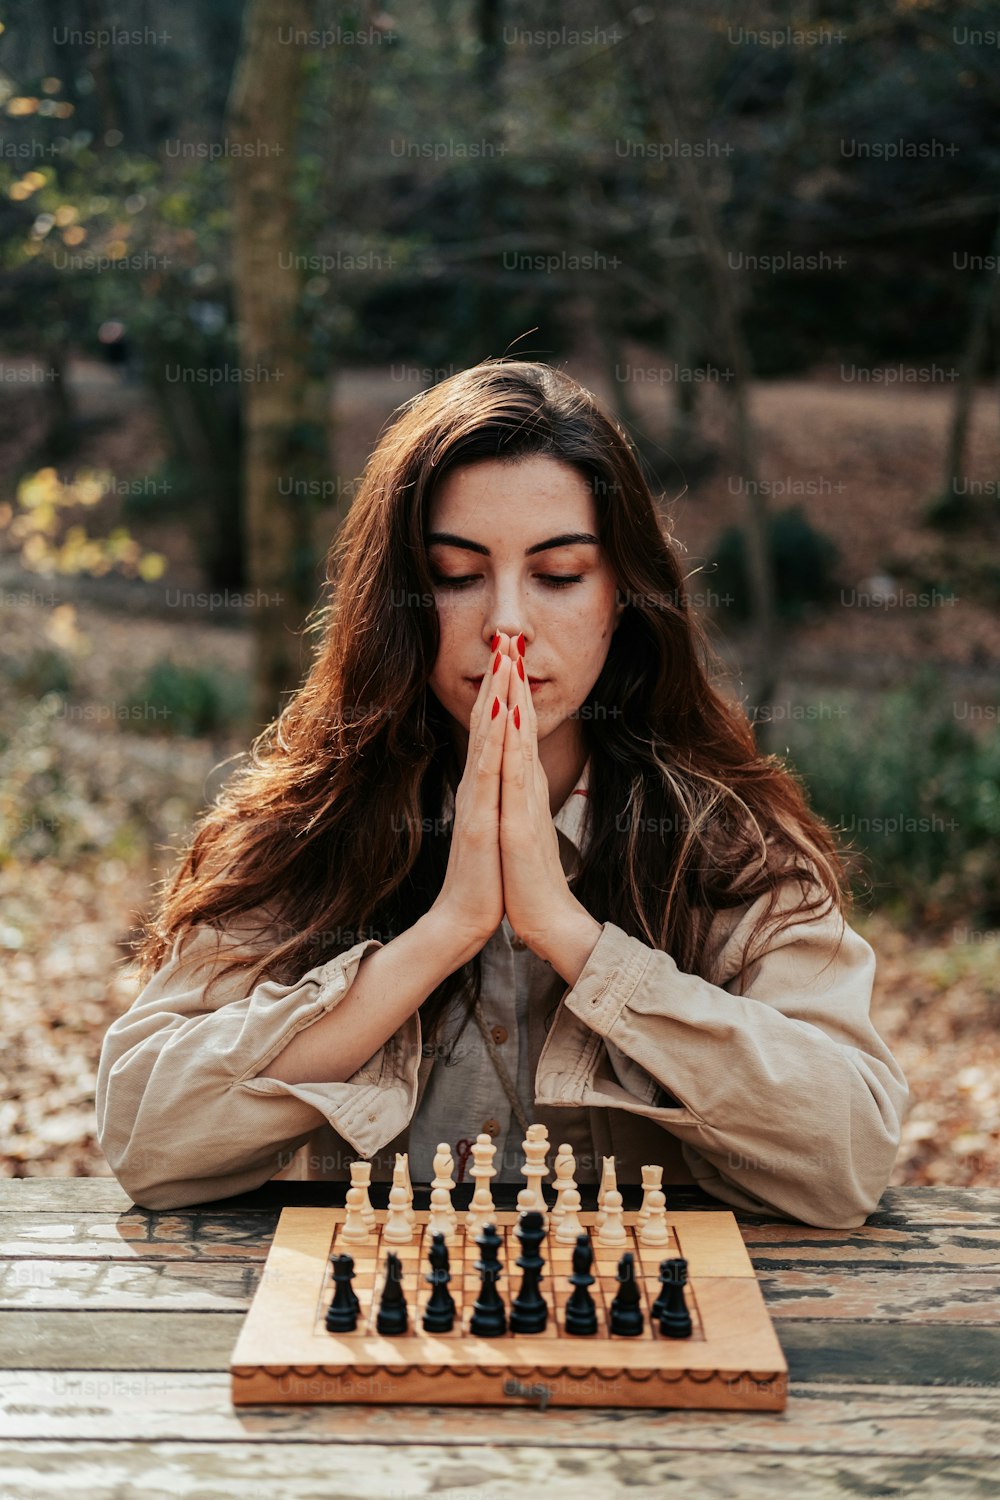 チェス盤の前に座っている女性